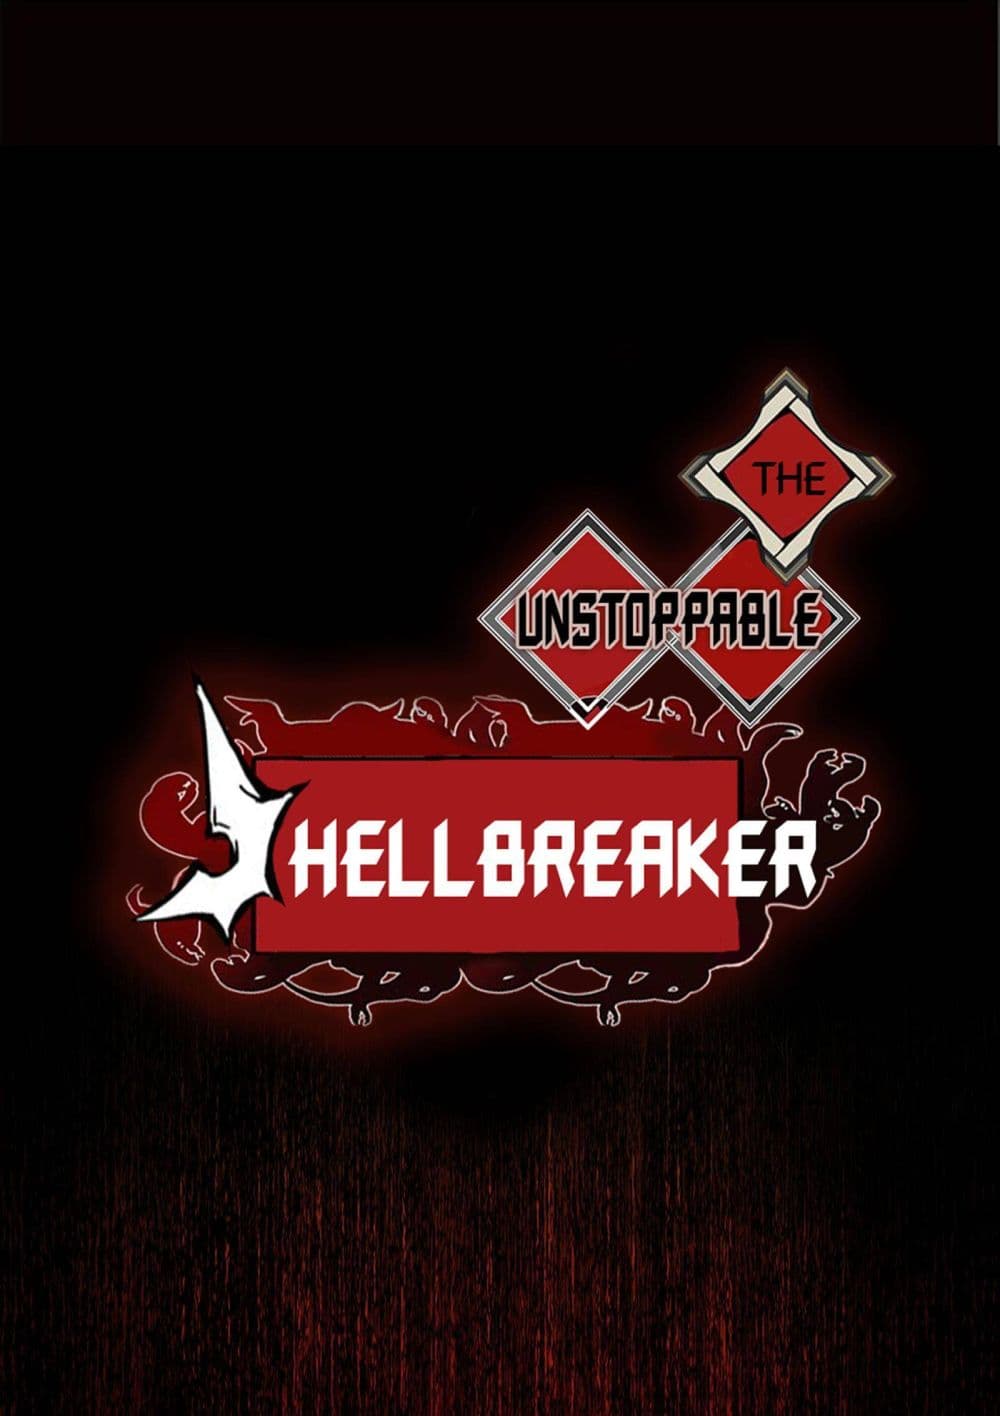 The Unstoppable Hellbreaker 14-14